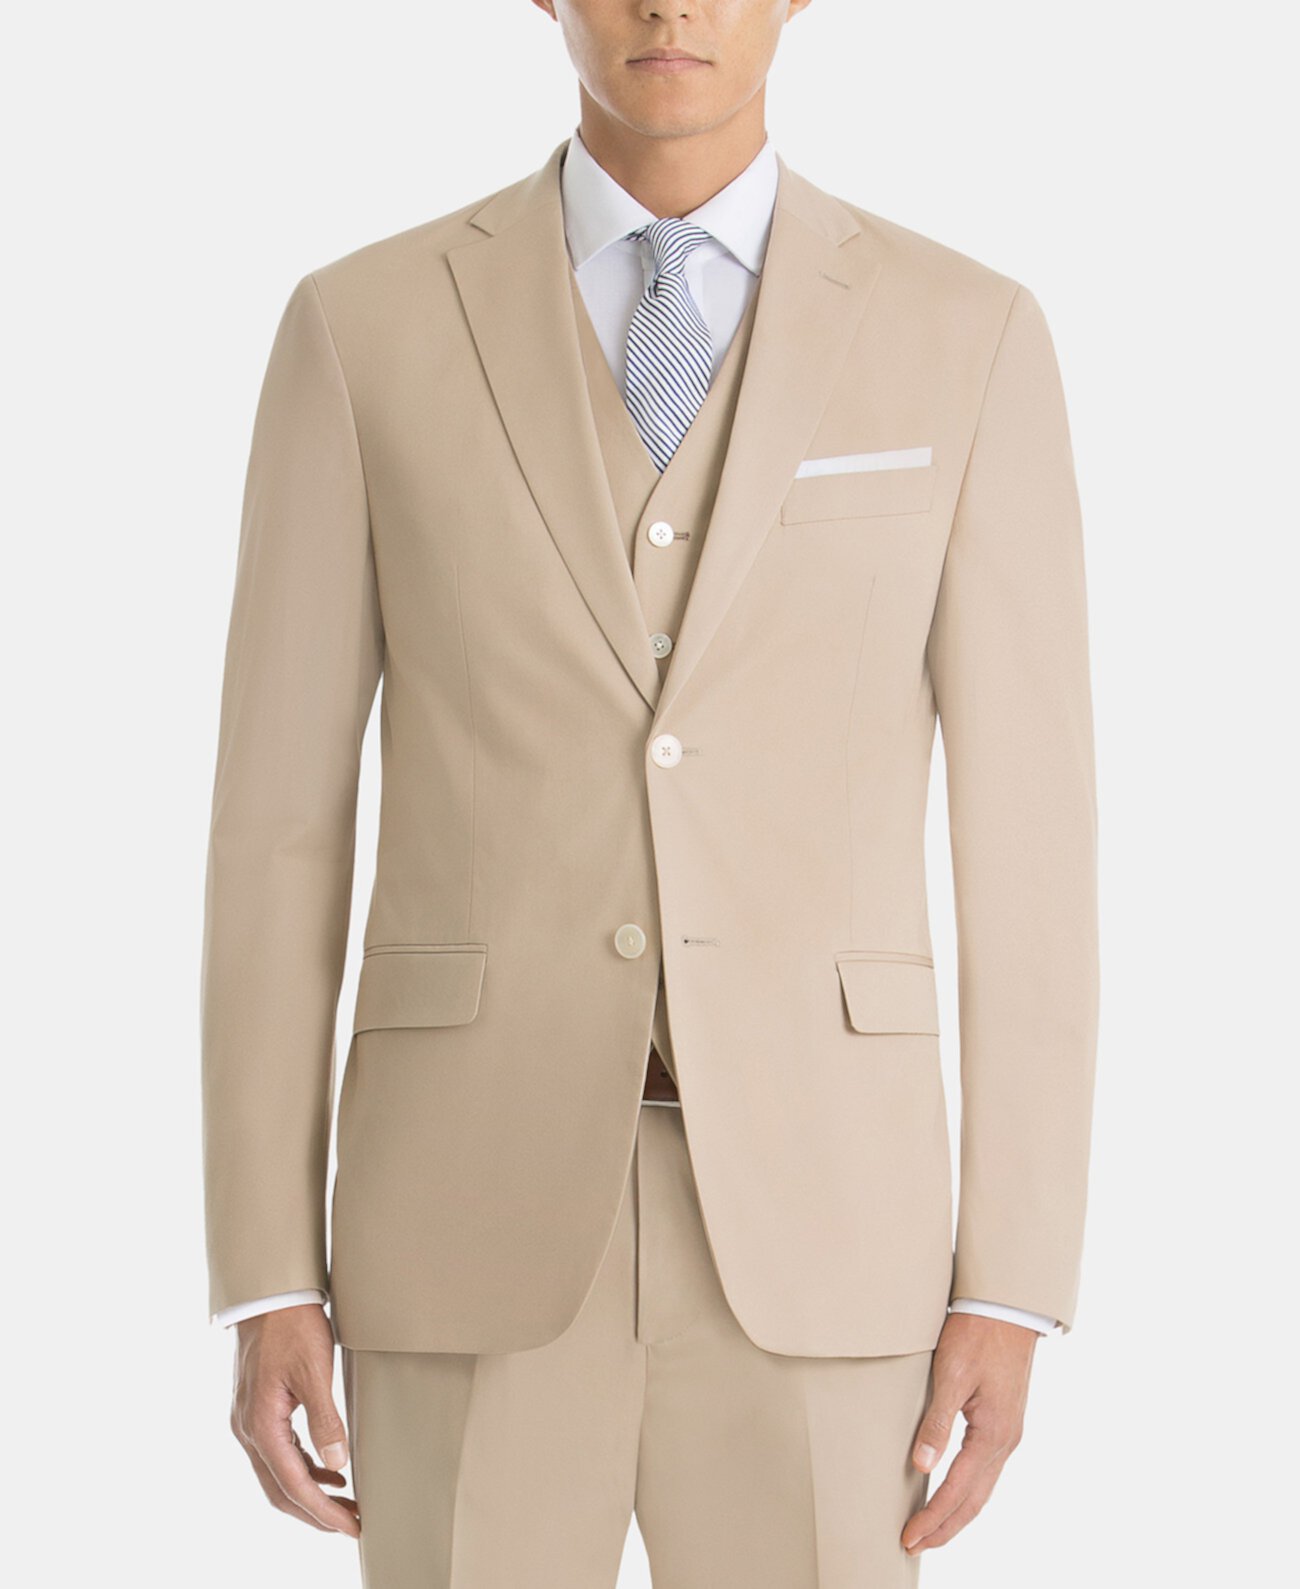 Мужское спортивное пальто из хлопка классического кроя UltraFlex светло-коричневого цвета Ralph Lauren